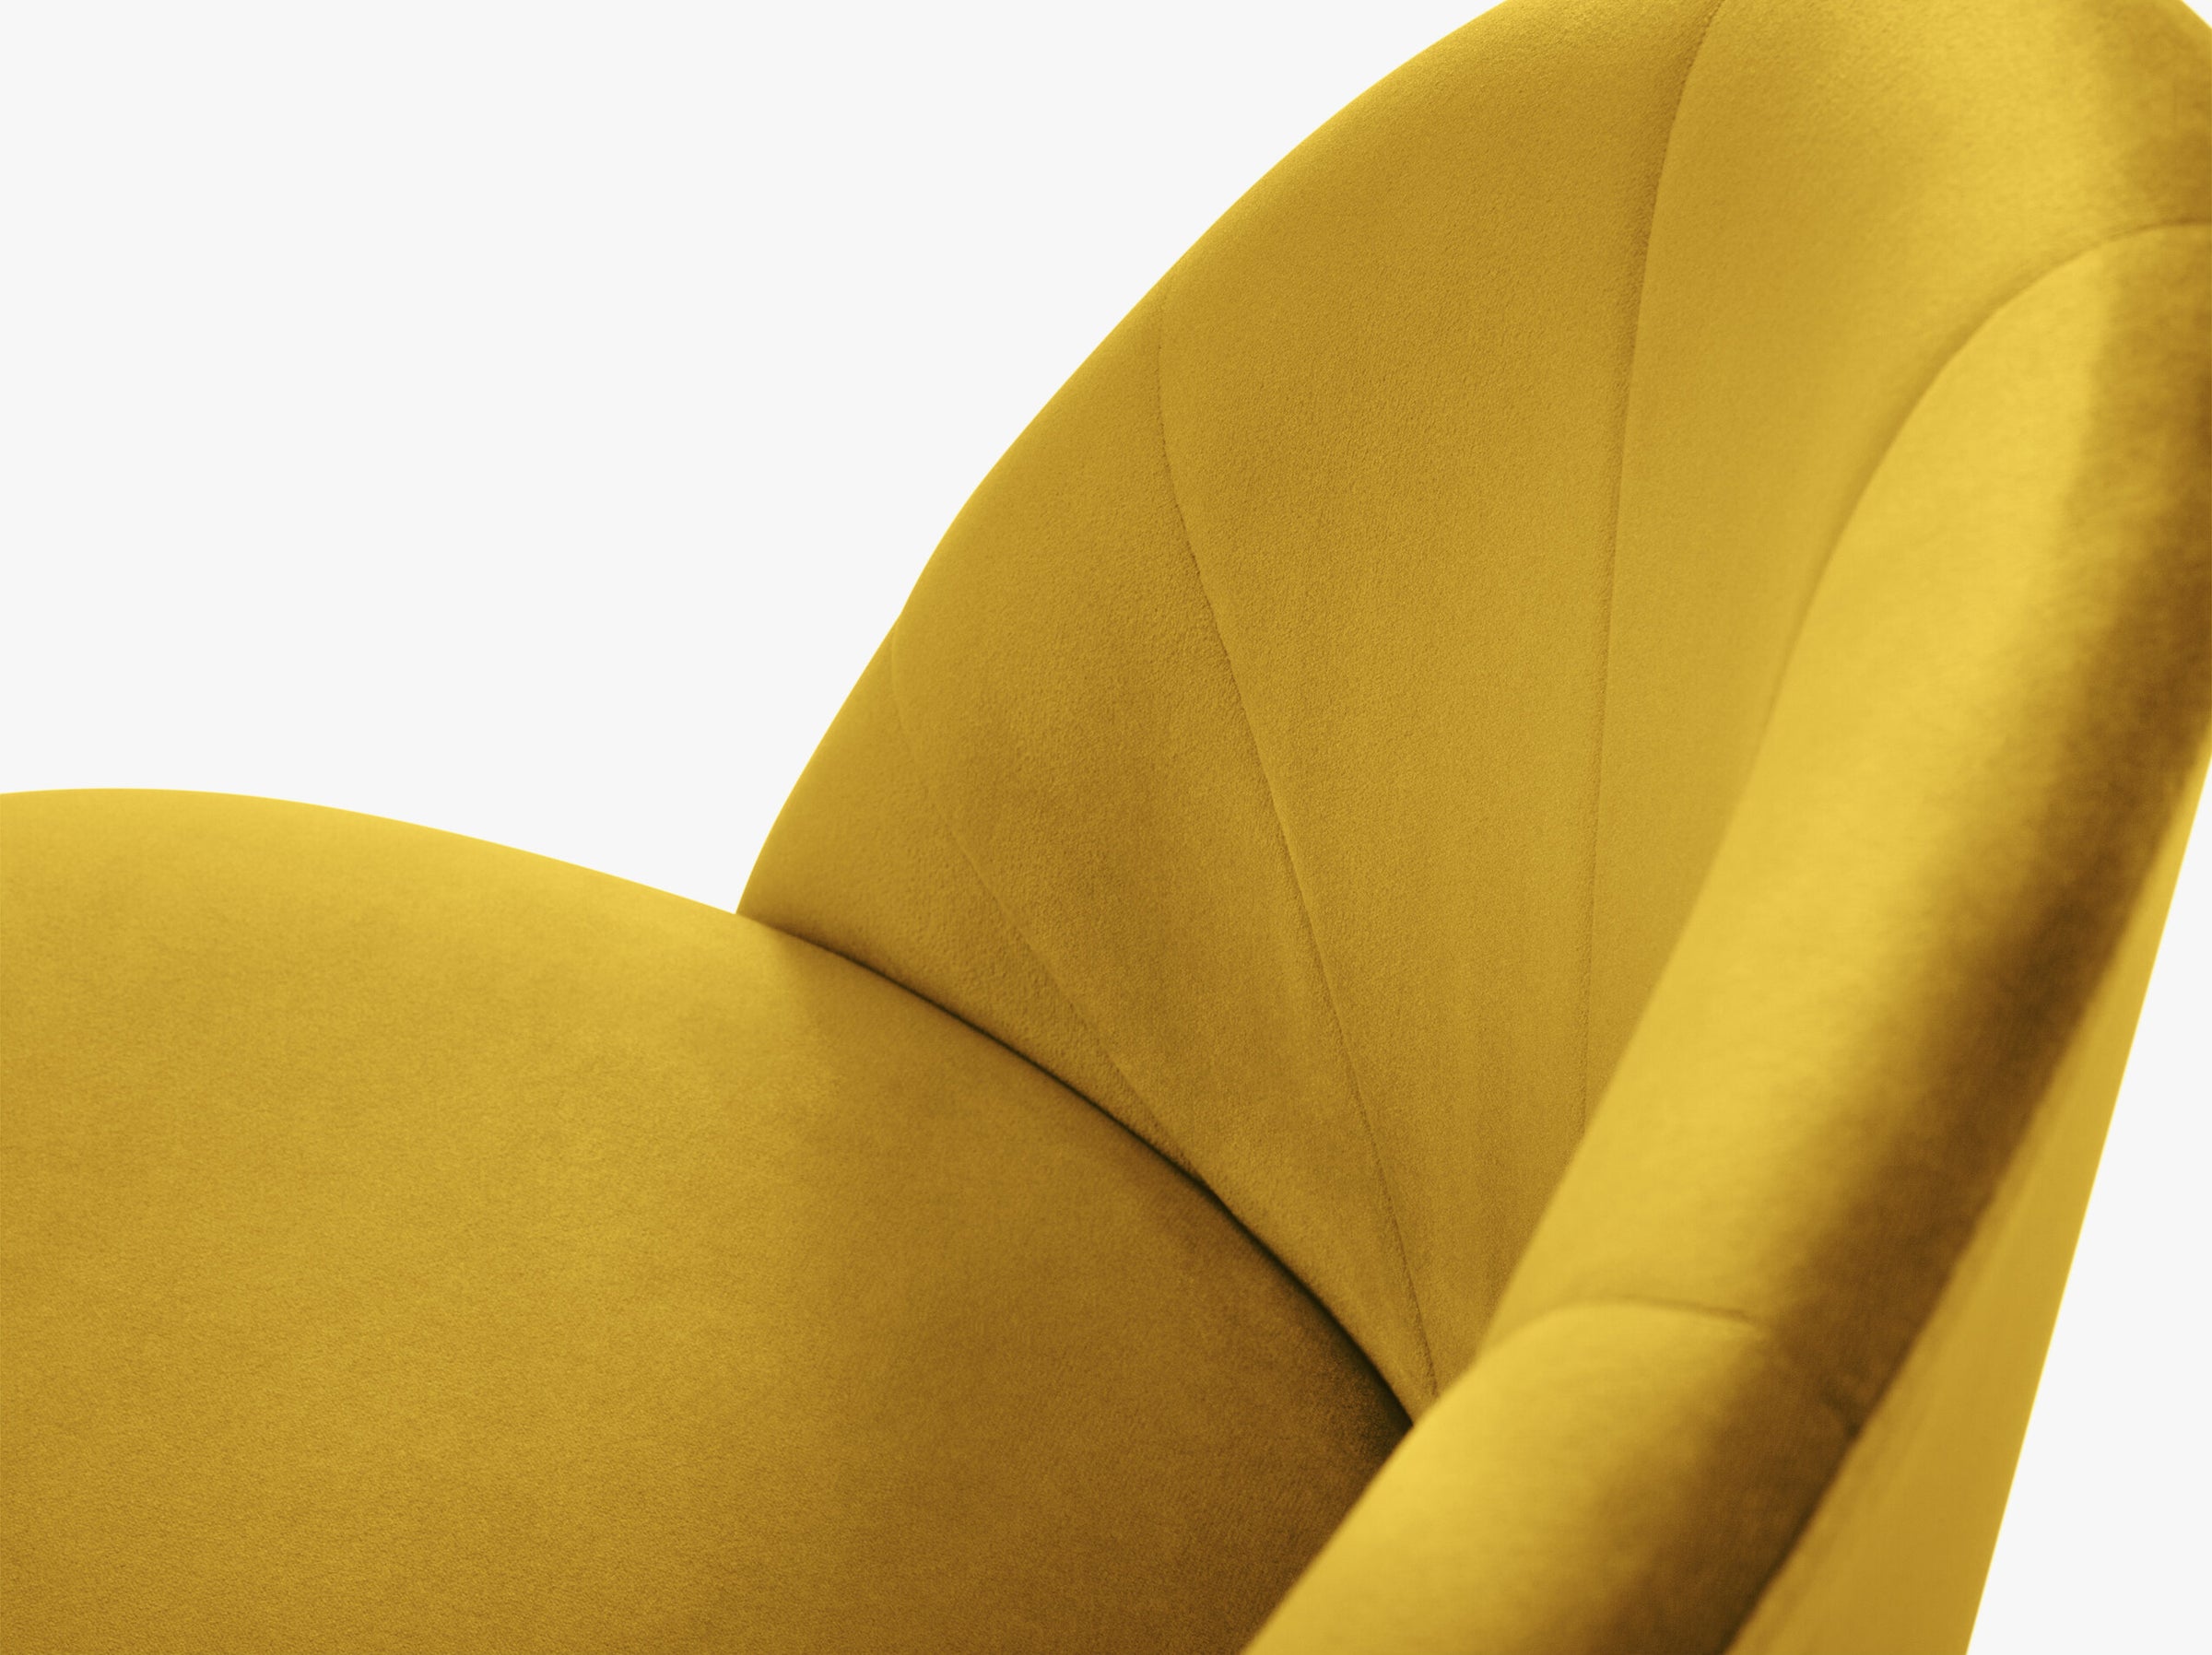 Ventura mesas y sillas terciopelo amarillo